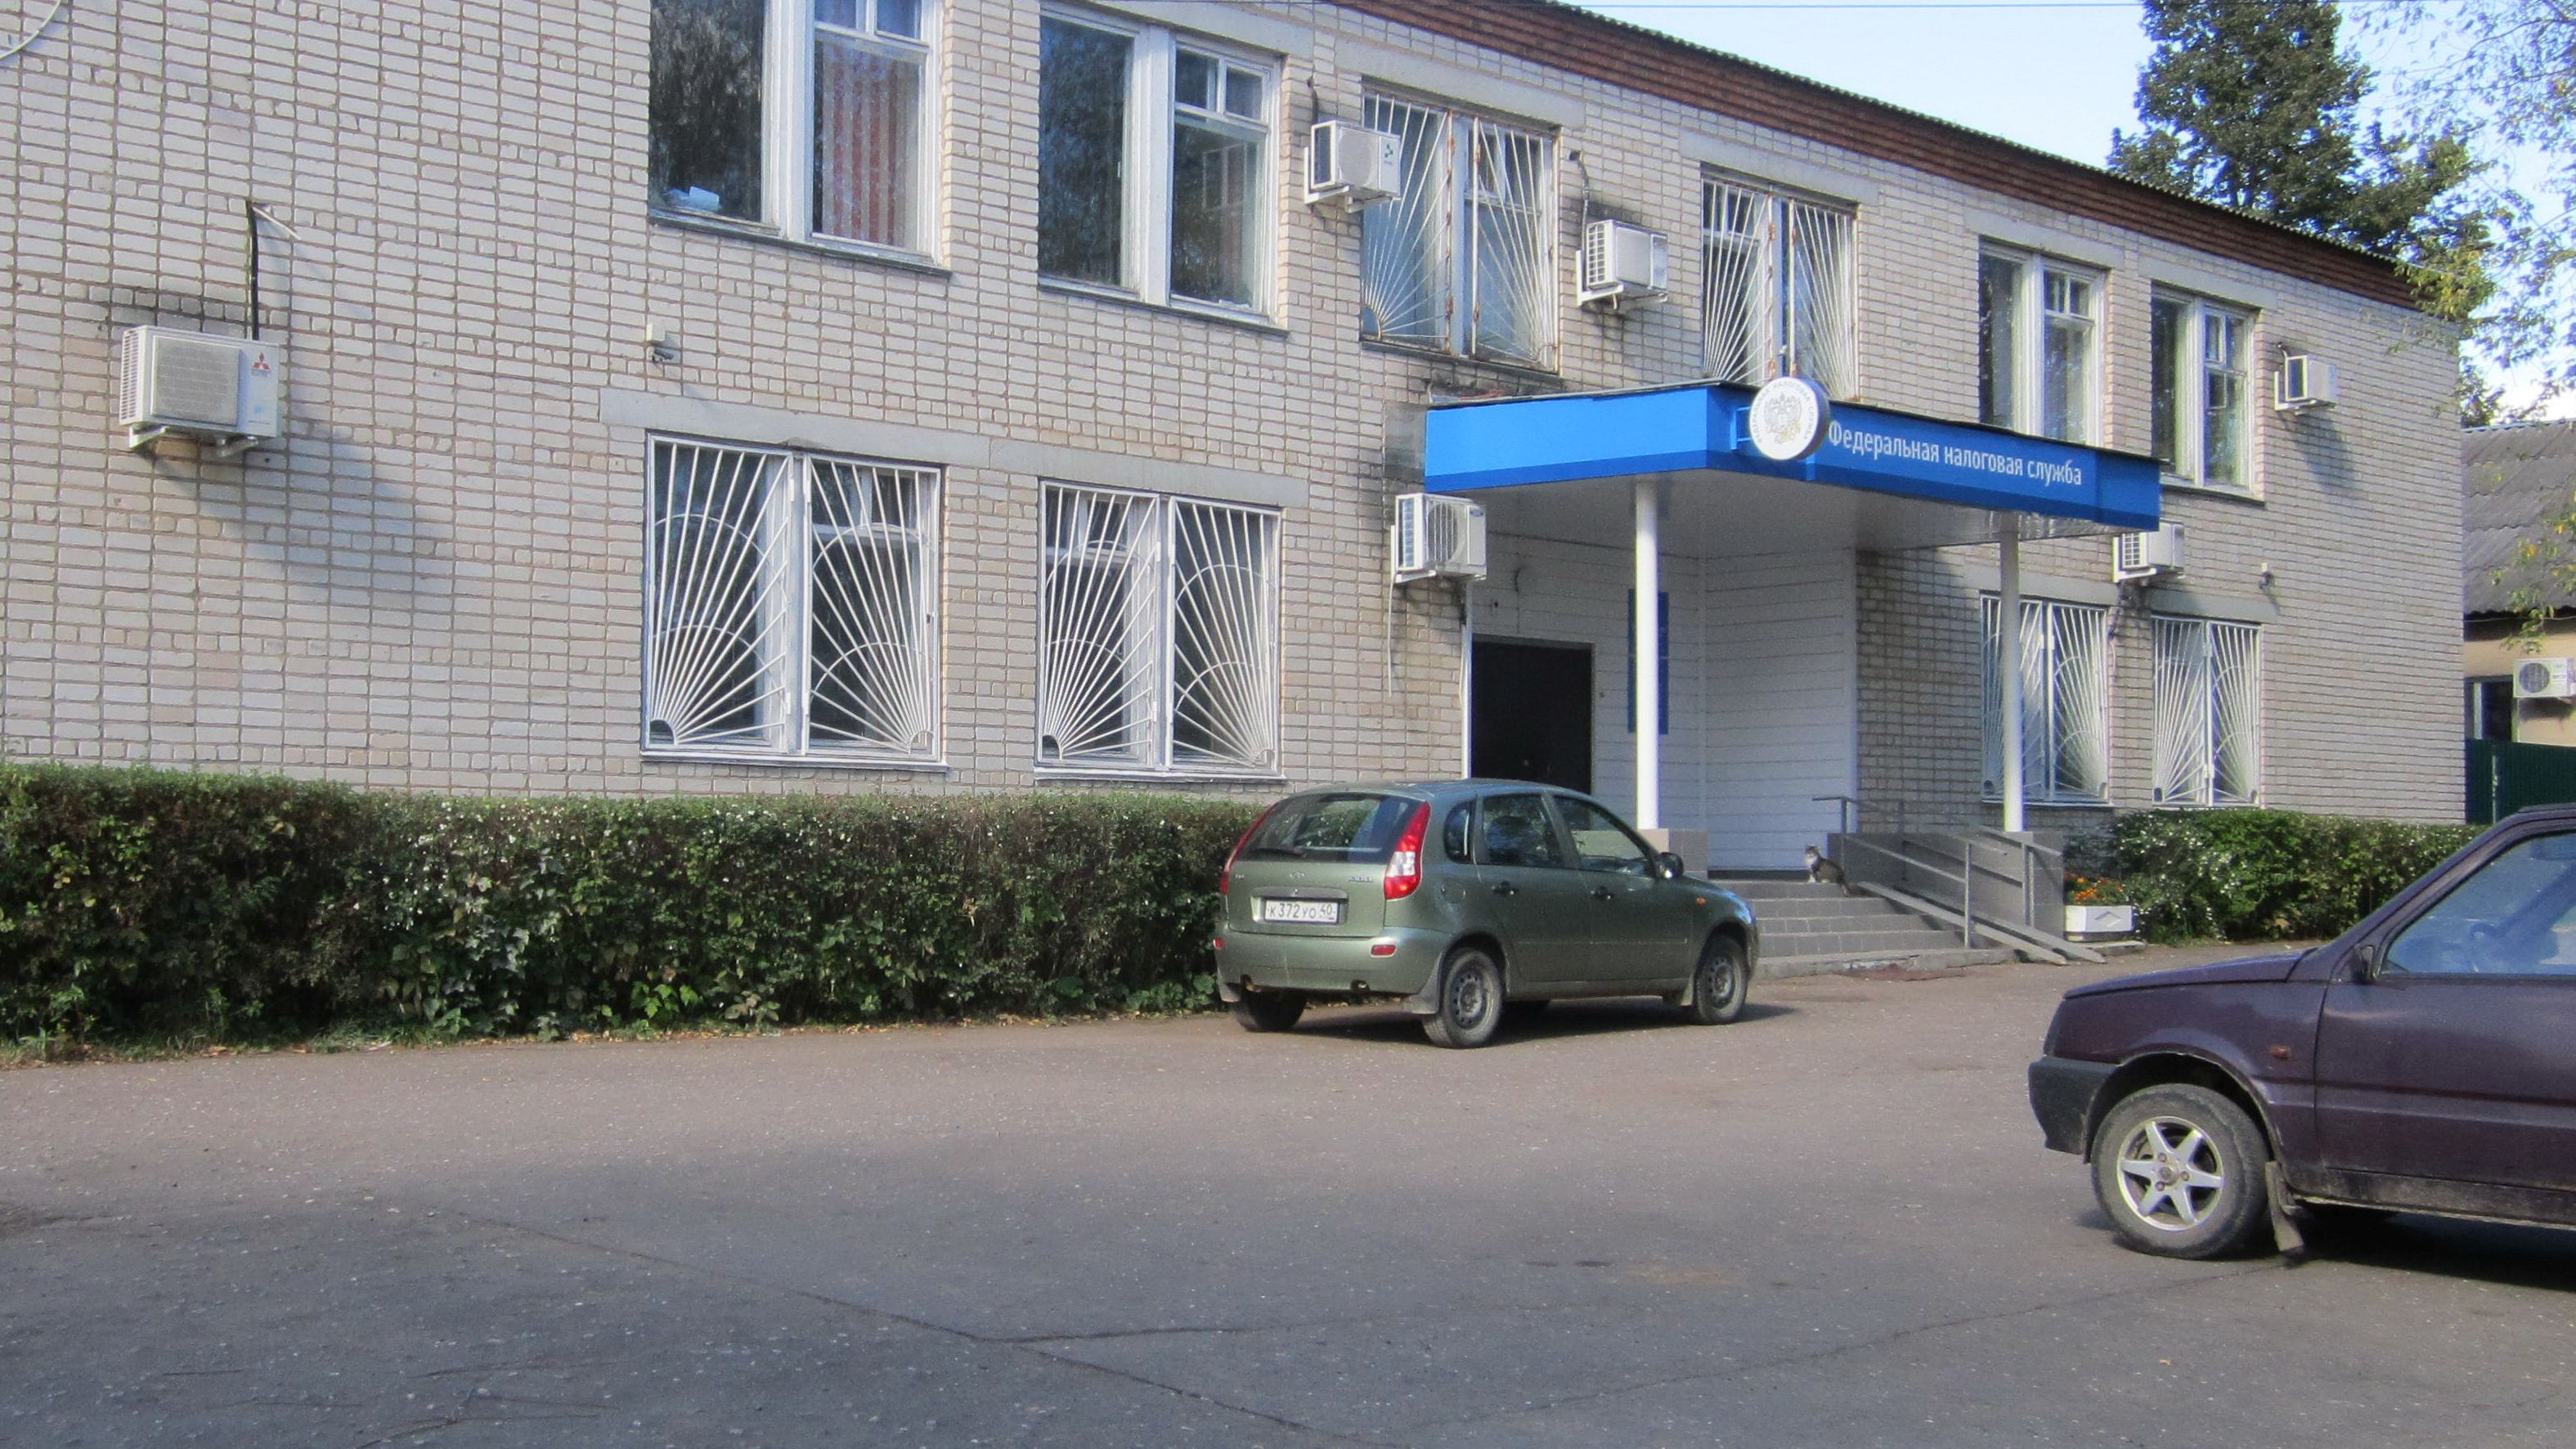  Здание главного корпуса ИнспекцииКалужская область, п. Бабынино, ул. Ленина, д. 23 